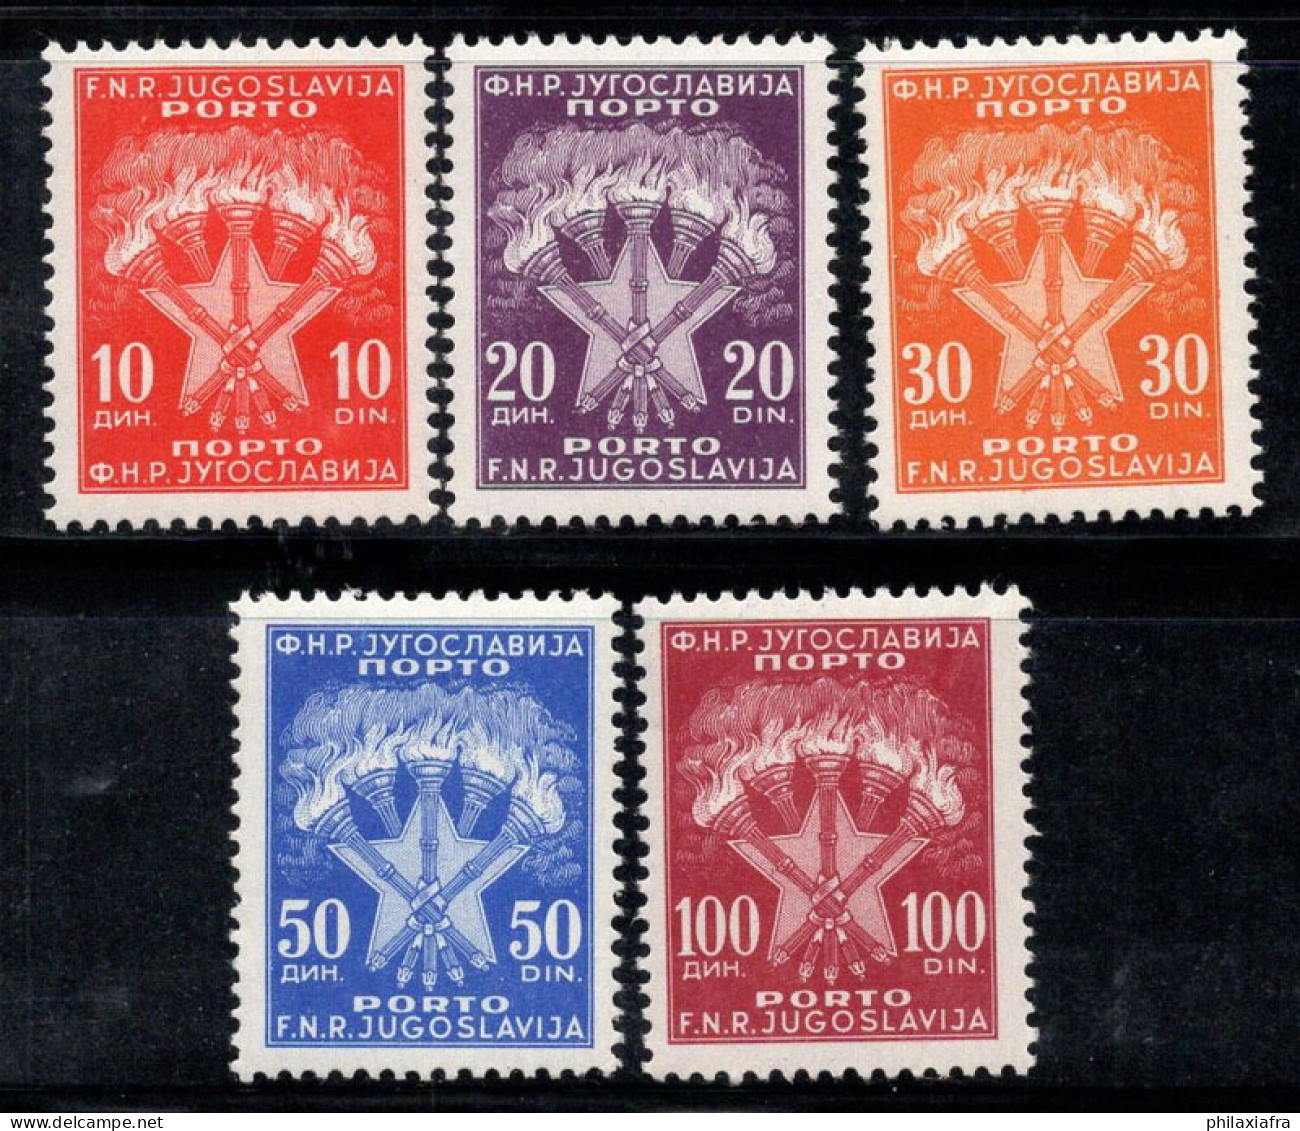 Yougoslavie 1962 Mi. 108-112 Neuf * MH 100% Timbre-taxe ARMOIRIES, étoile - Postage Due